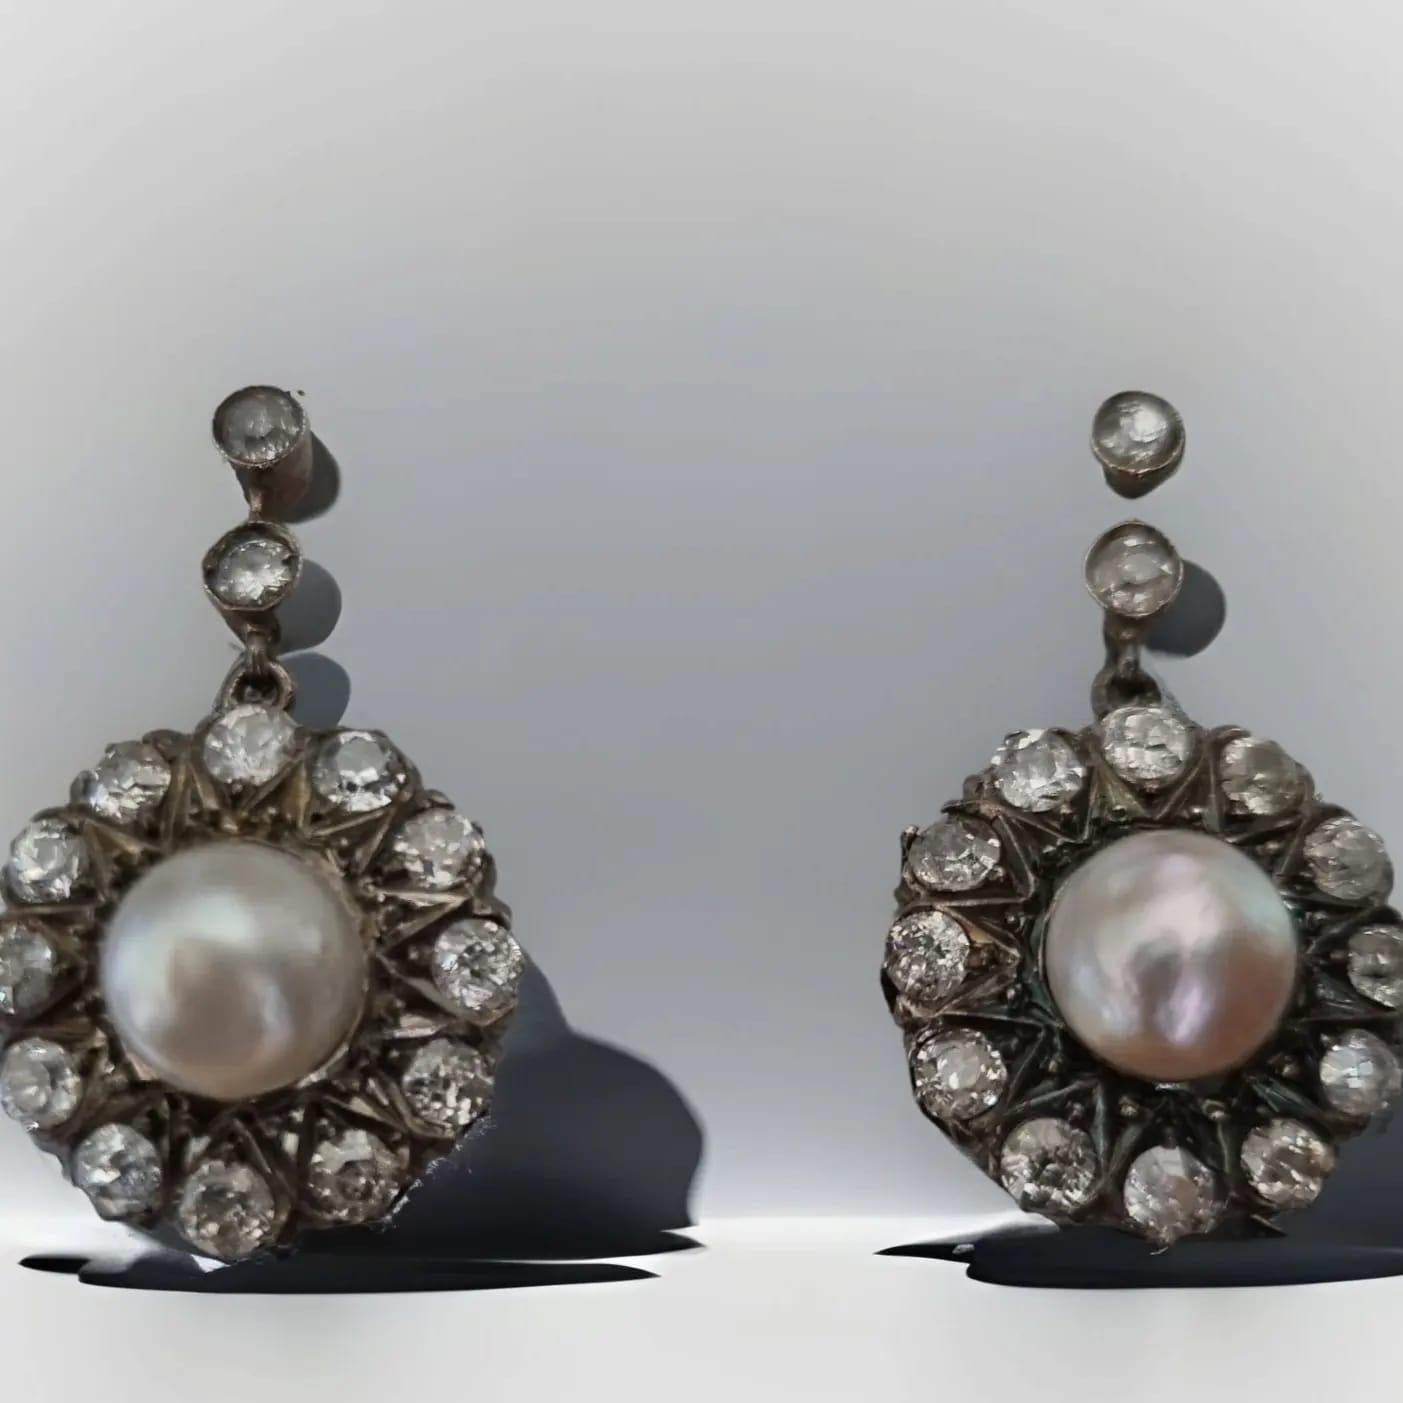 Boucles d'oreilles pendantes victoriennes en perles et diamants (19ème siècle)
Les diamants de taille européenne, brillants et étincelants, descendent comme des gouttes de rosée, centrés par des perles de couleur blanche lumineuse.  et un orient